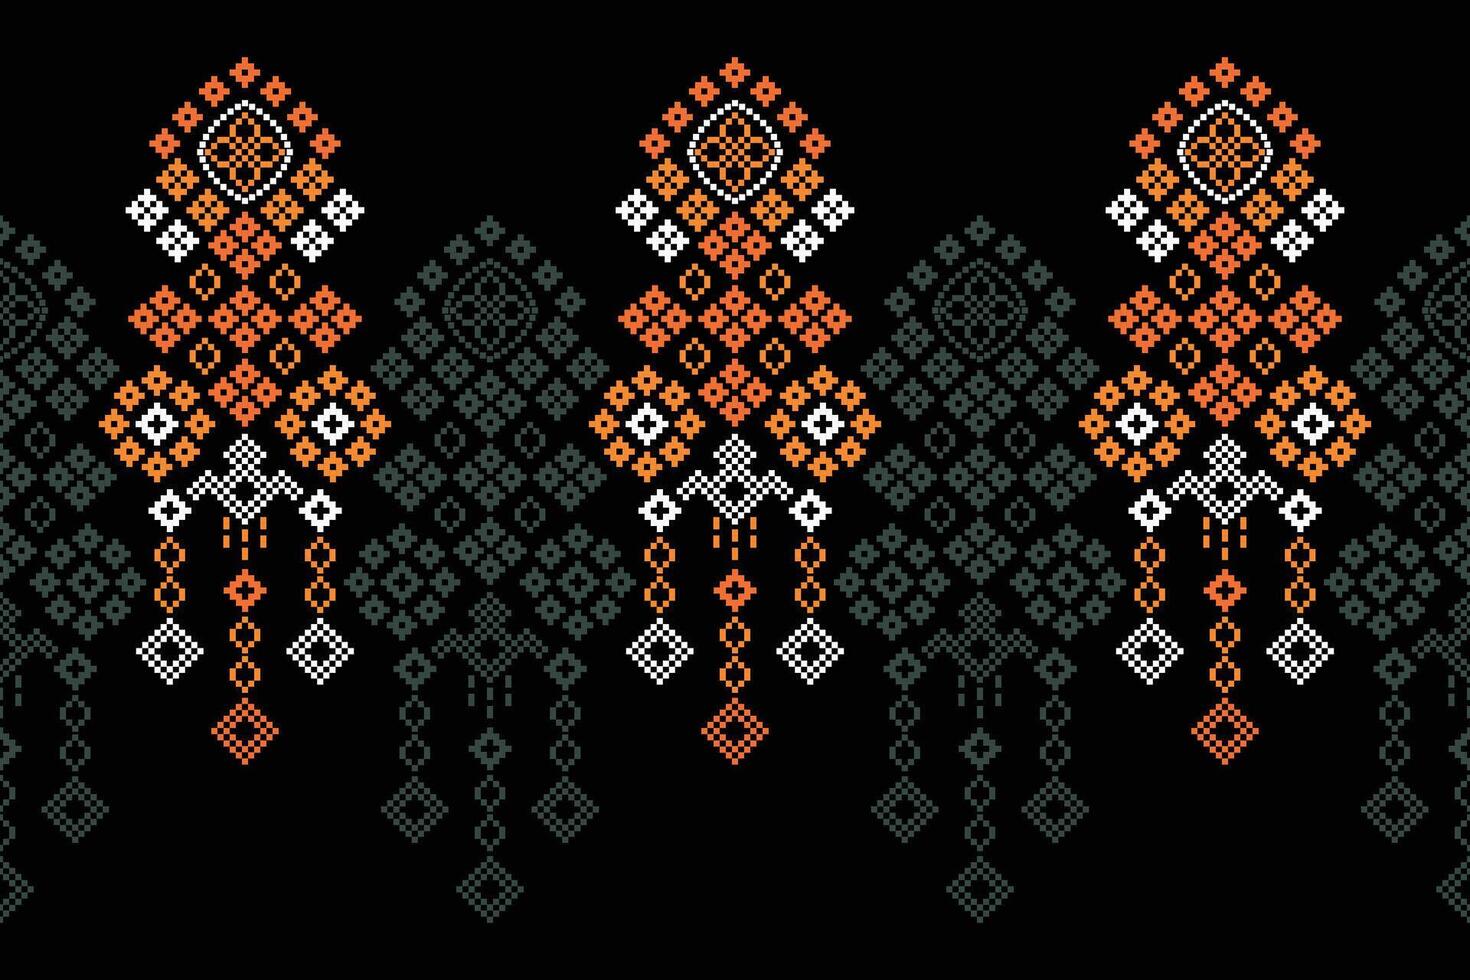 traditioneel etnisch motieven ikat meetkundig kleding stof patroon kruis steek.ikat borduurwerk etnisch oosters pixel zwart achtergrond.abstract,vector,illustratie. textuur, sjaal, decoratie, behang. vector